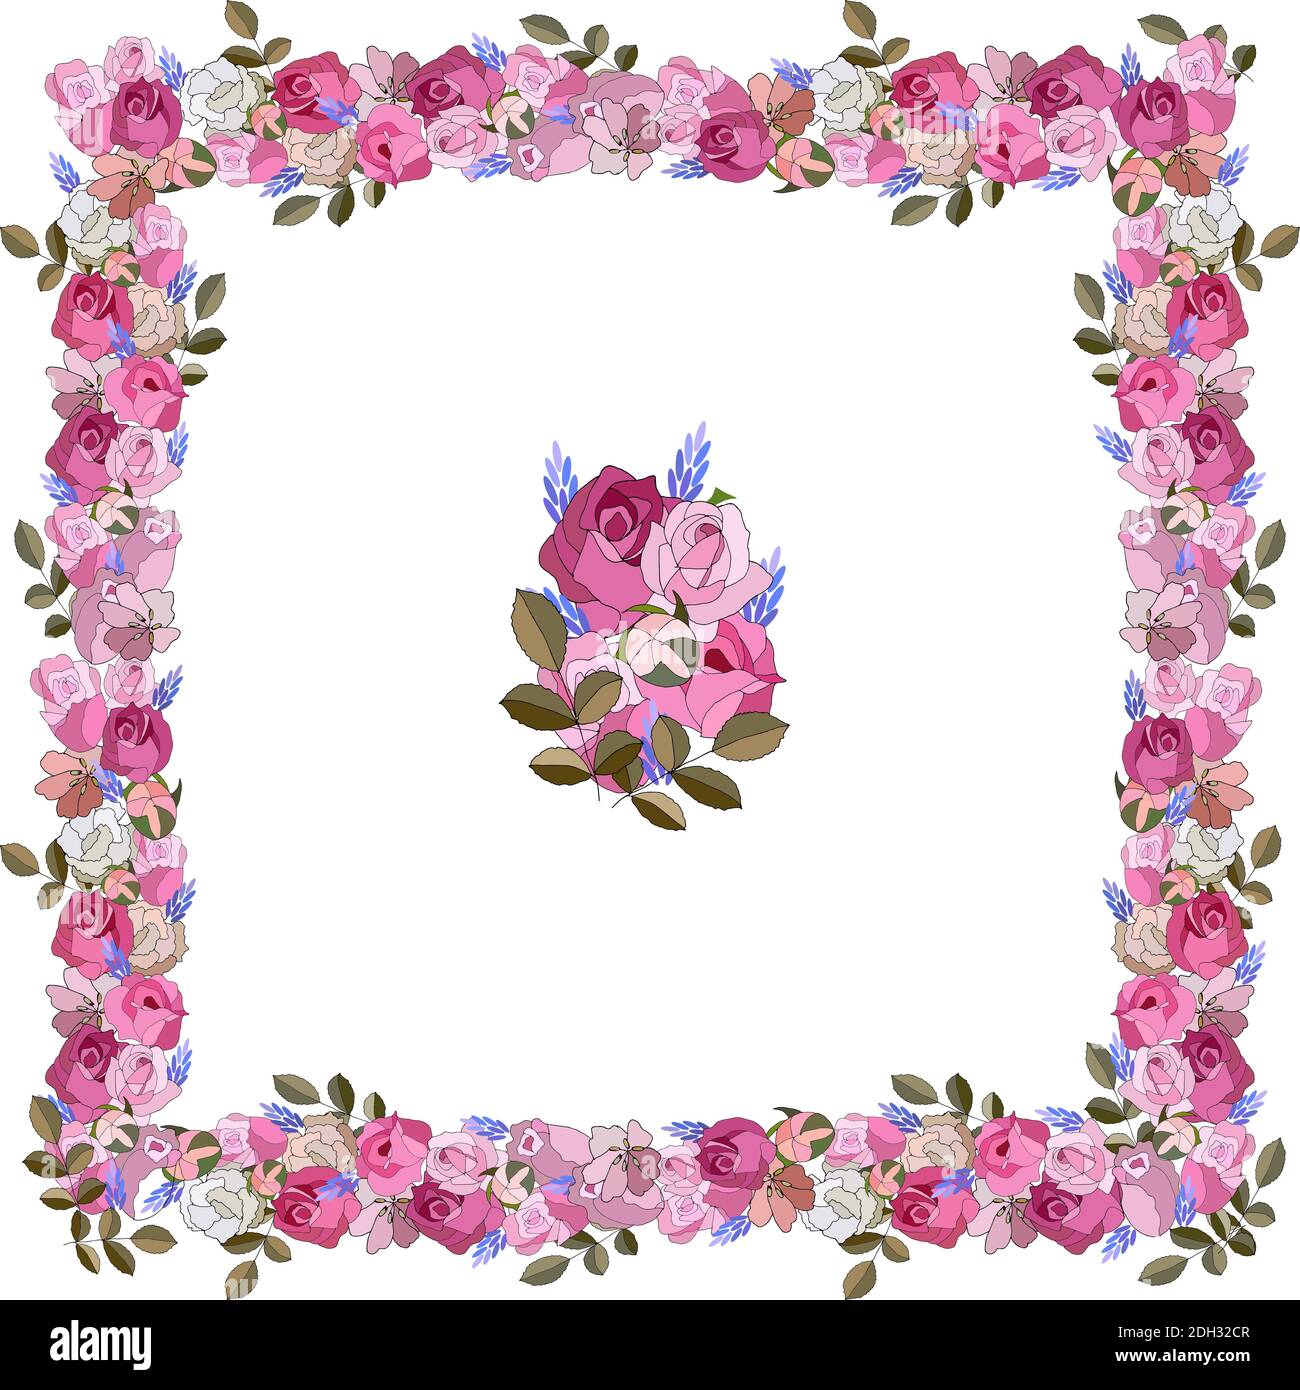 Handgezeichnete Vintage-Karte mit Blumenrose, Blätter auf weißem Hintergrund. Hochzeit Ornament Konzept. Blumenposter, Einladung. Vektor dekorative Grußkarte Stock Vektor